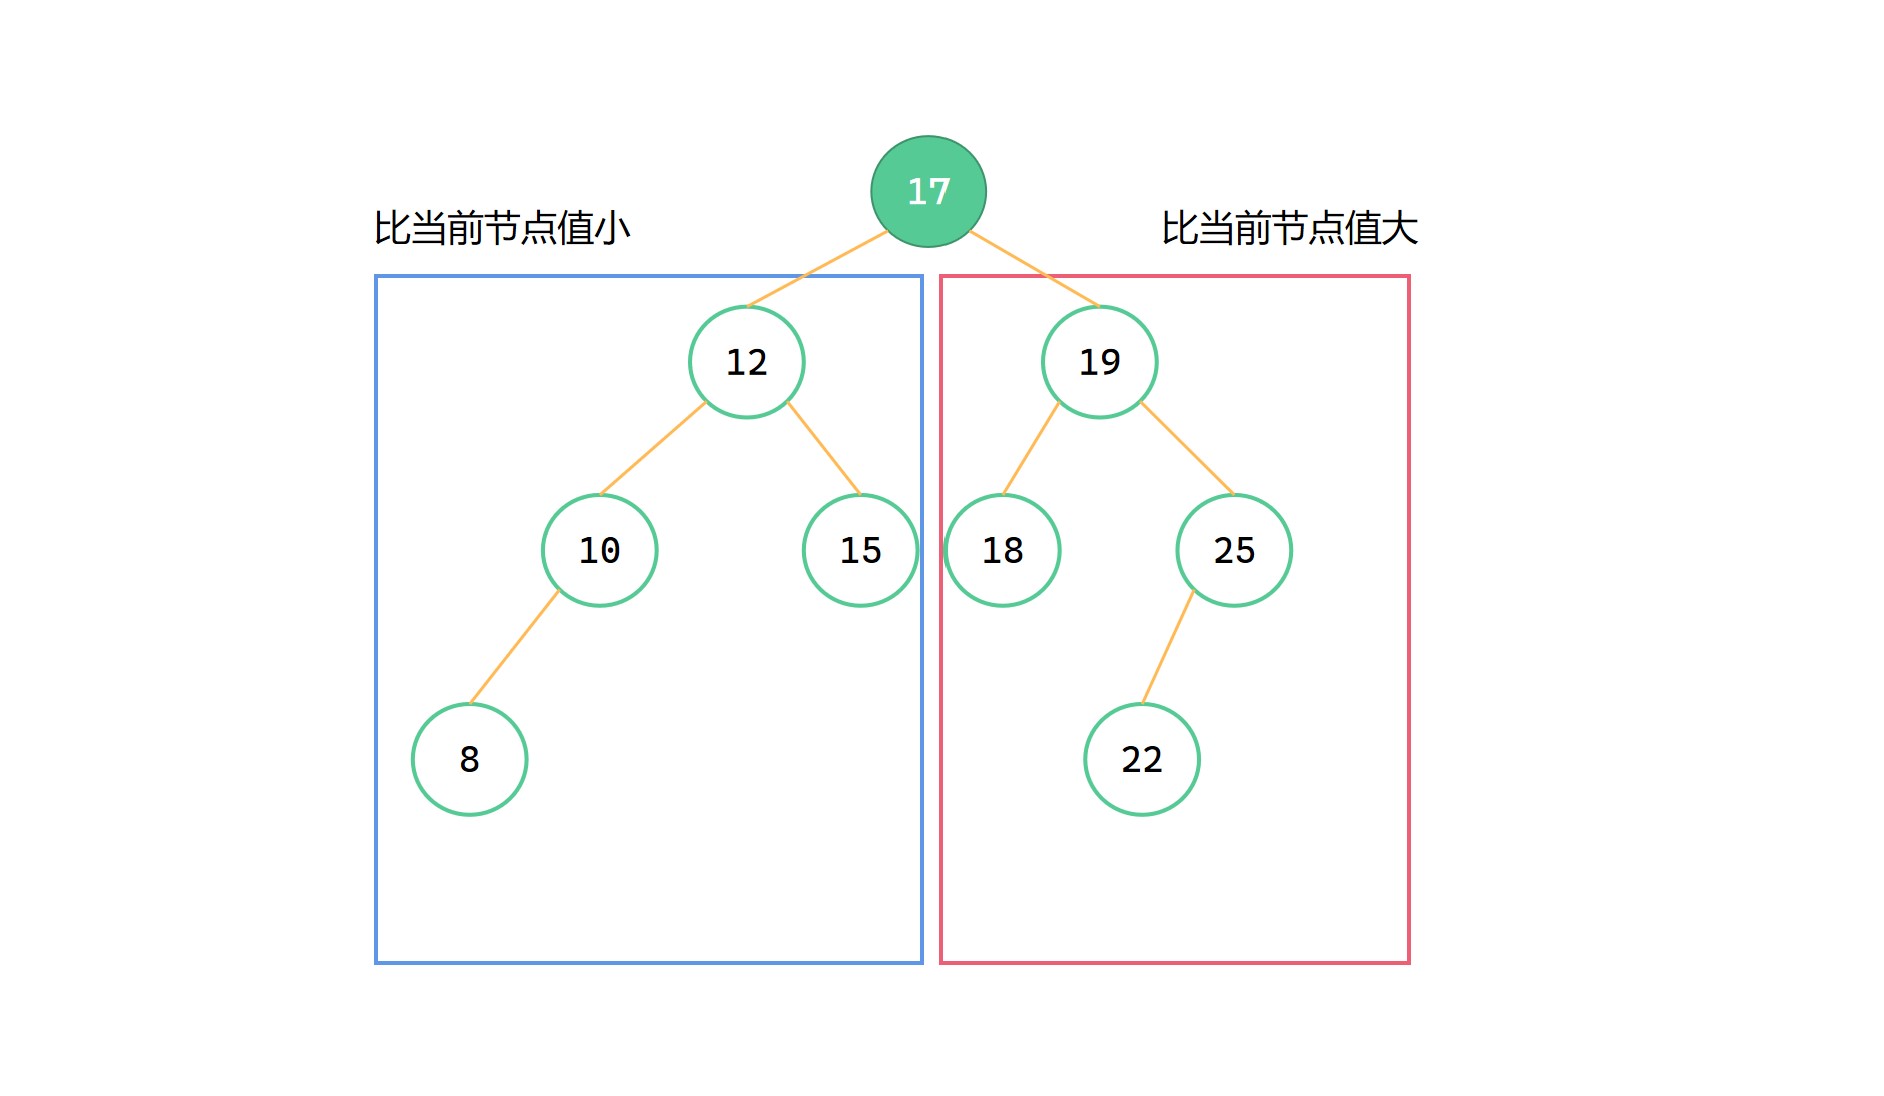 [数据结构] 二叉搜索树 (二叉排序树)